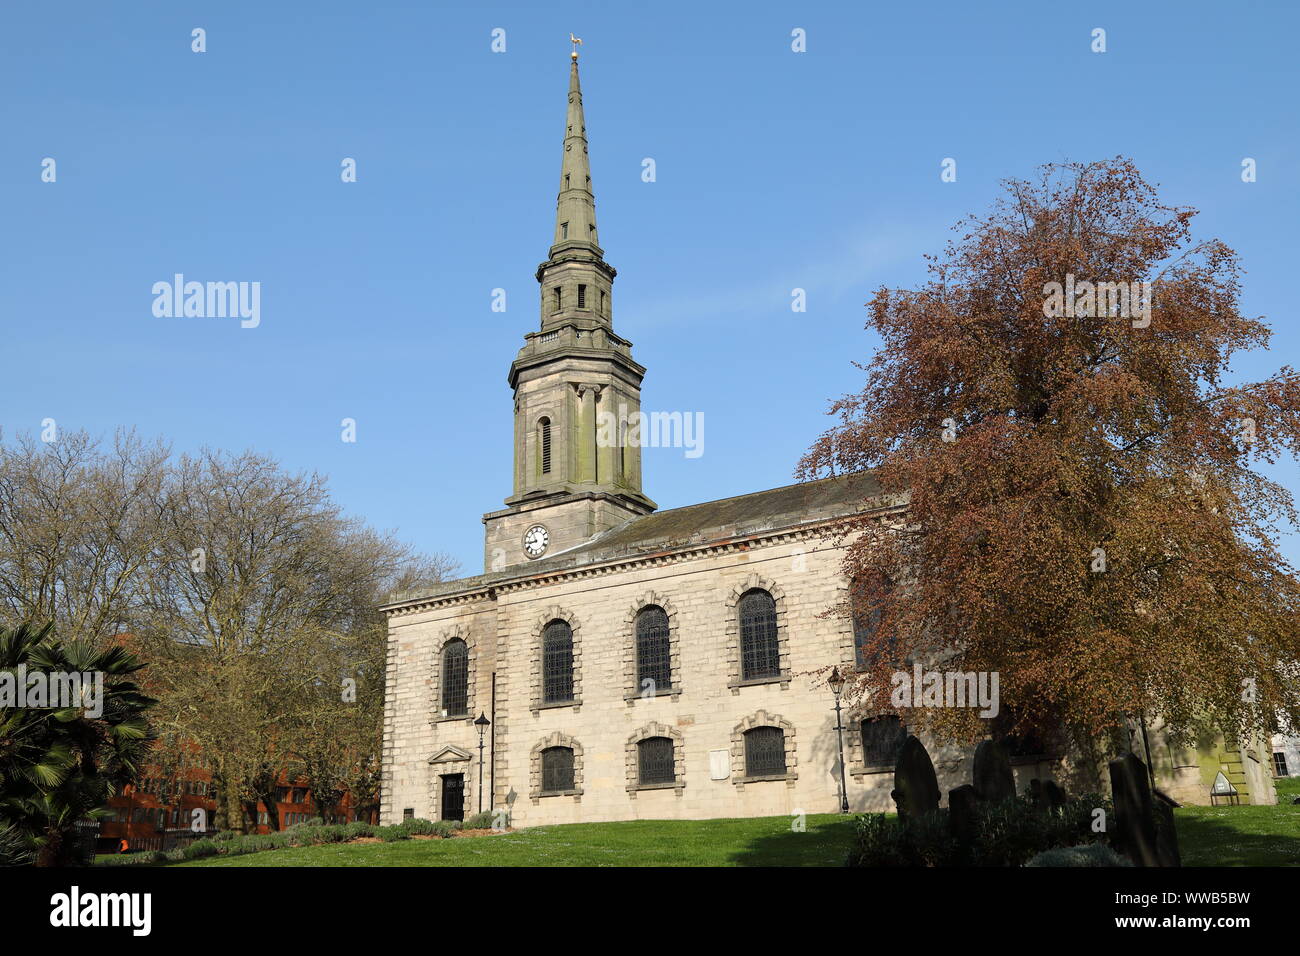 Le 18e siècle Eglise Saint-Paul, situé à St Paul's Square, Birmingham, Angleterre. Banque D'Images